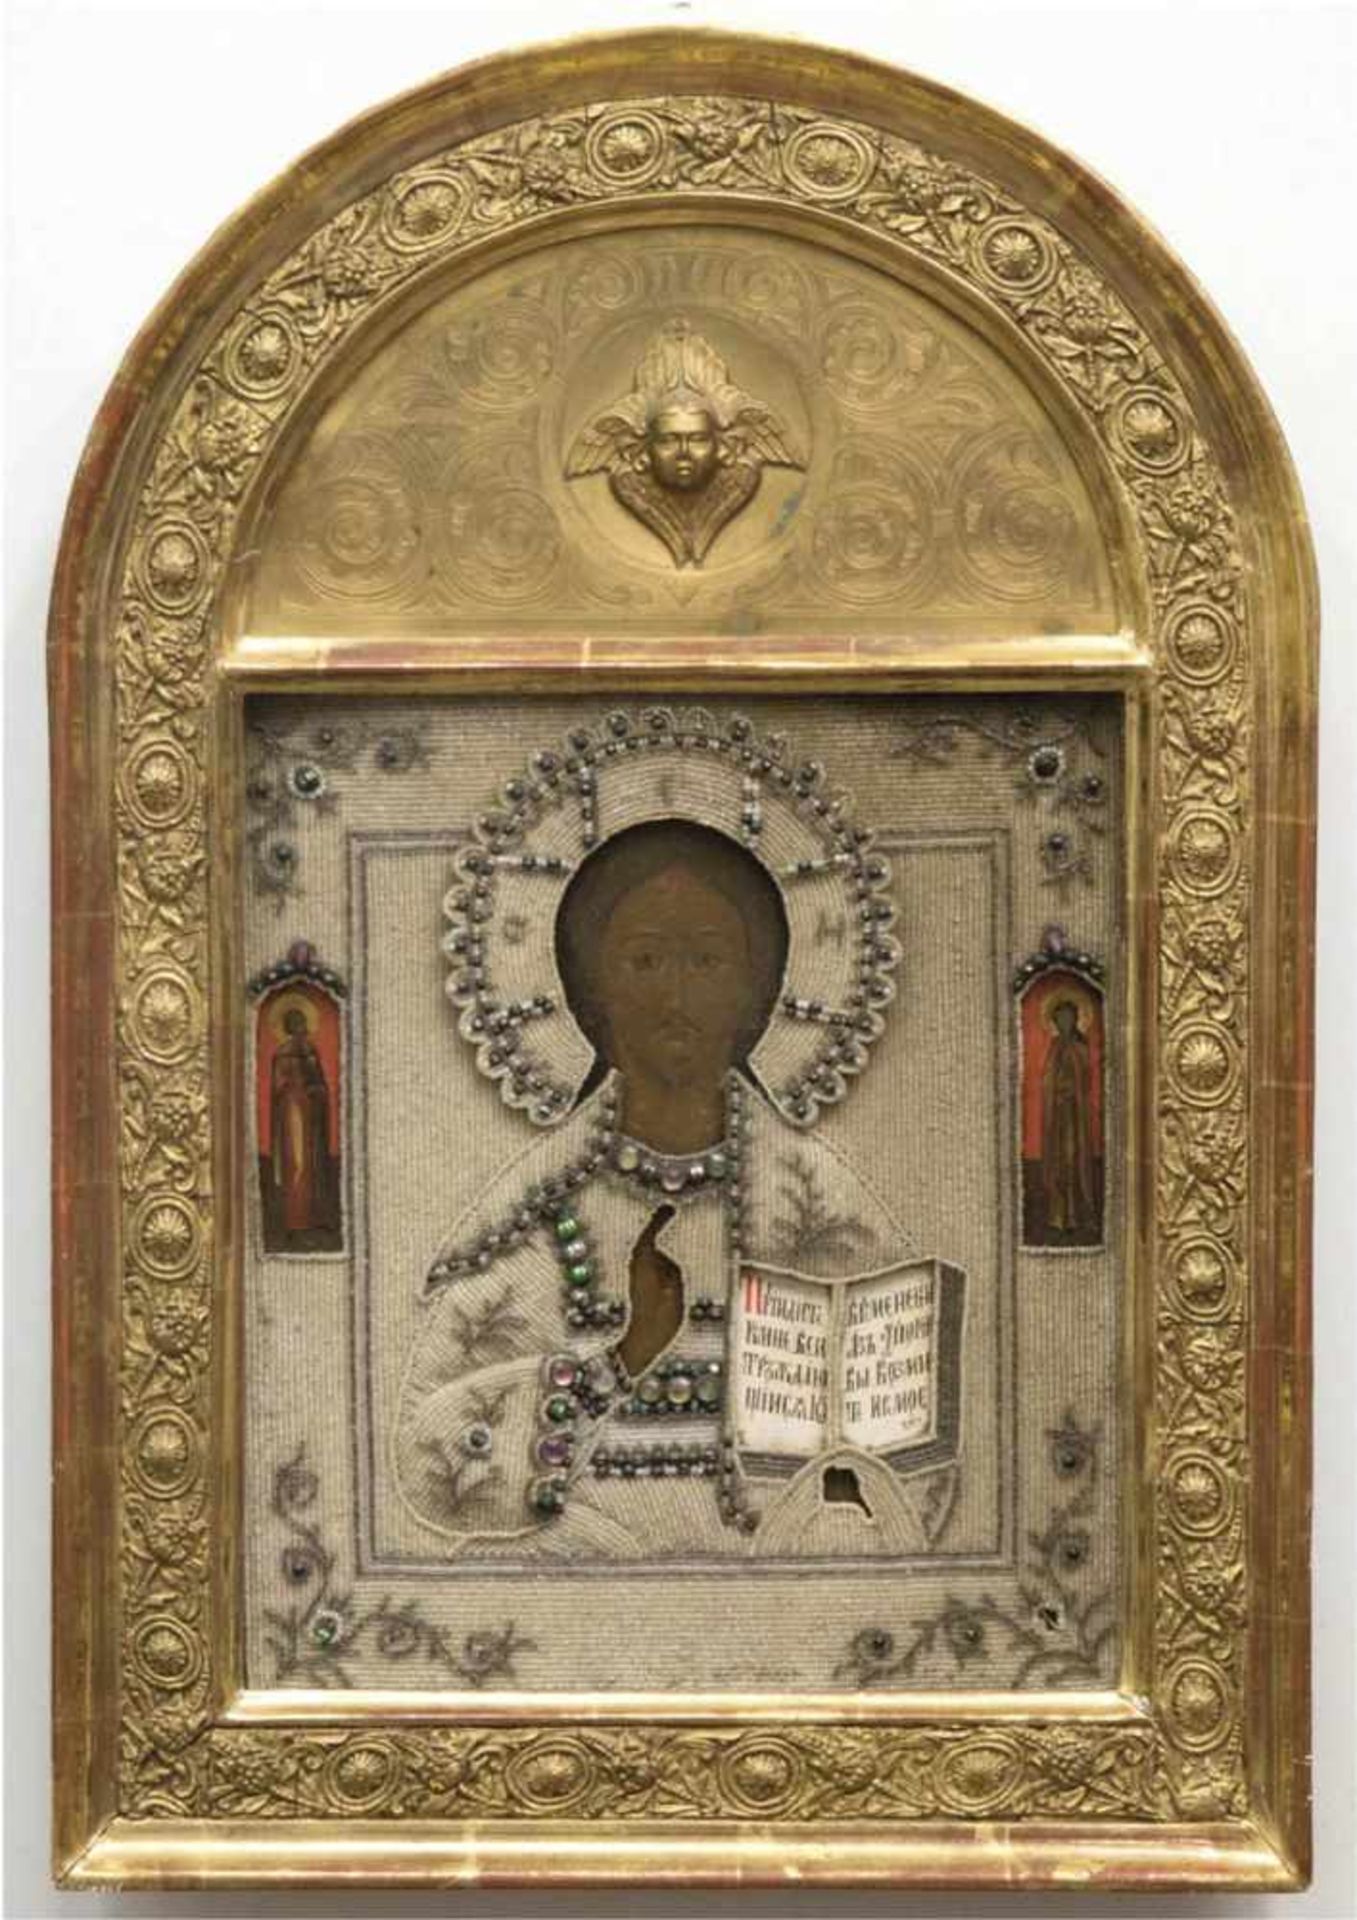 Ikone, um 1870, "Christus Pantokrator mit auserwählten Heiligen" Ei/Öl/Tempera auf Holz,Perlenbesatz